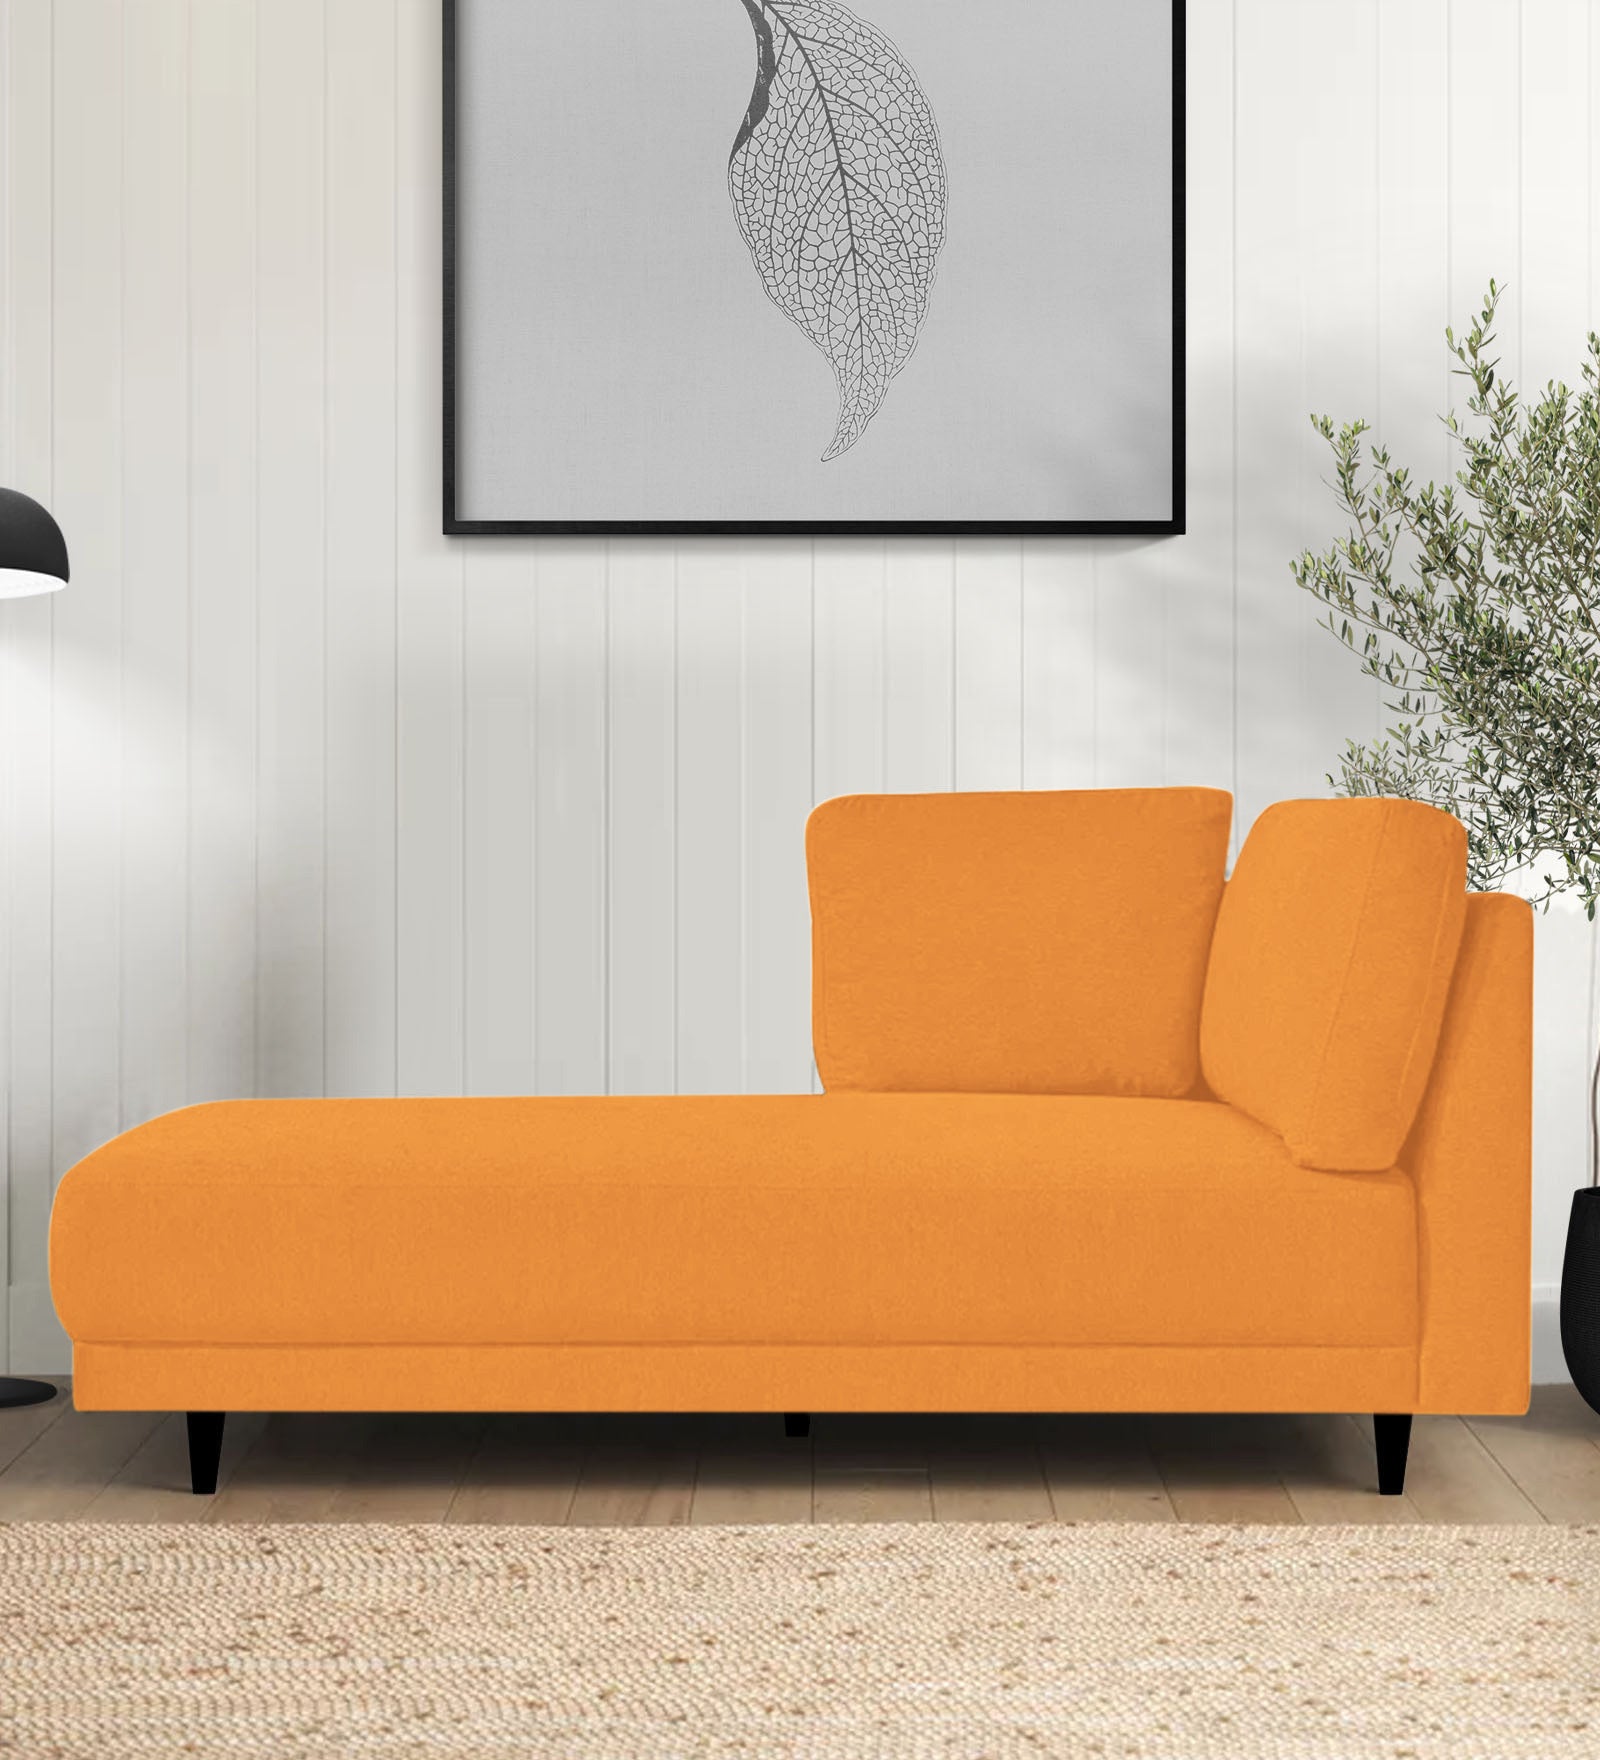 Jonze Velvet LHS Chaise Lounger in Tangerine Orange Colour